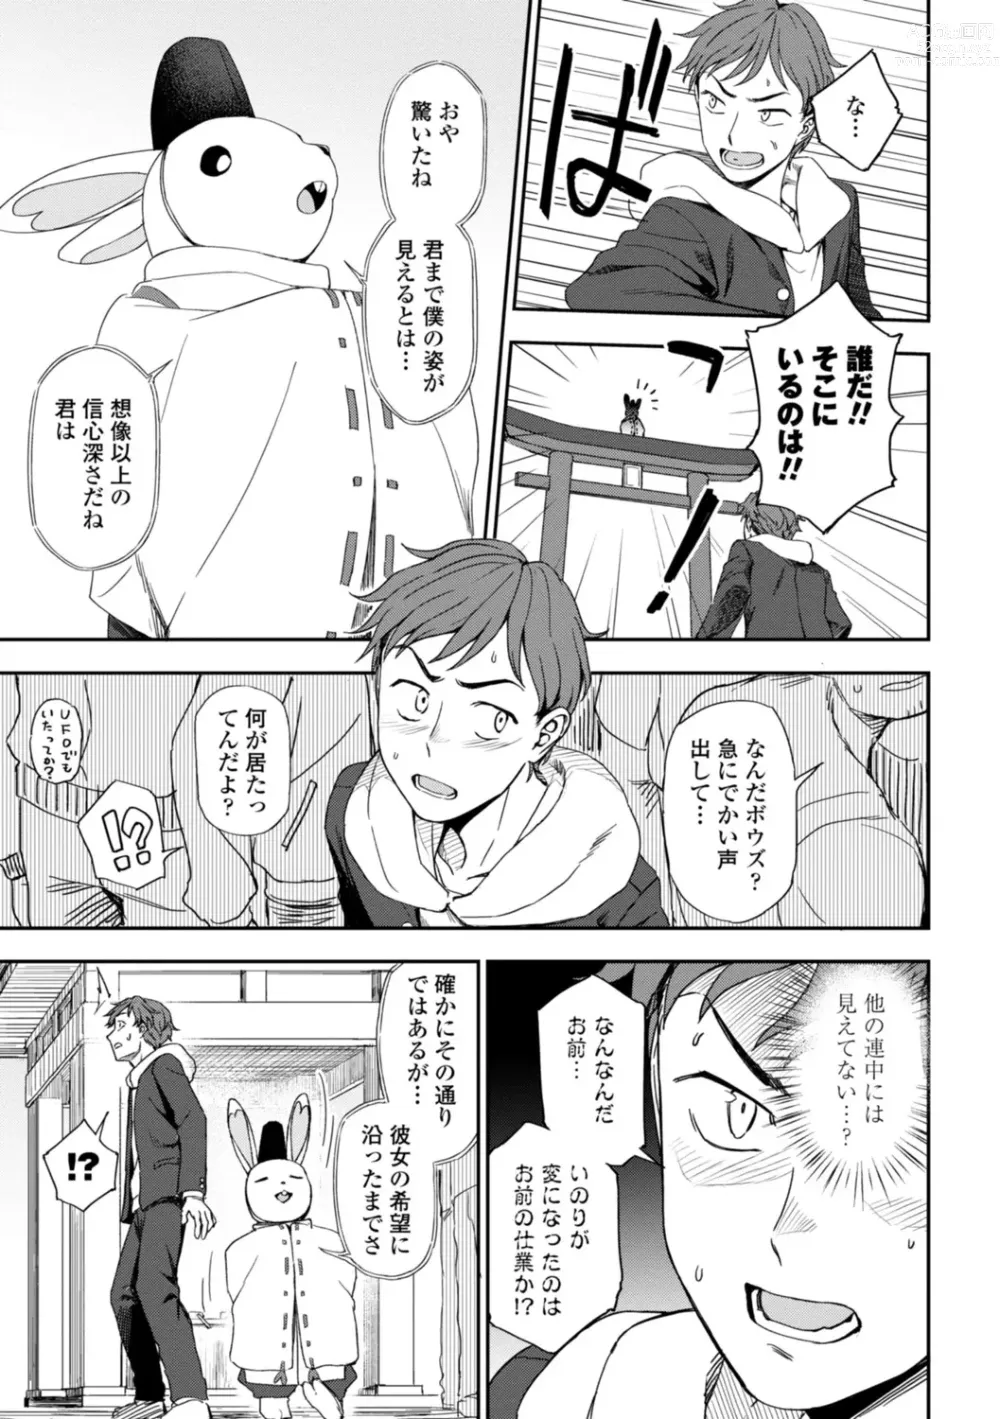 Page 9 of manga Watashi no Subete Sasagemasu - Ill give you all of mine.